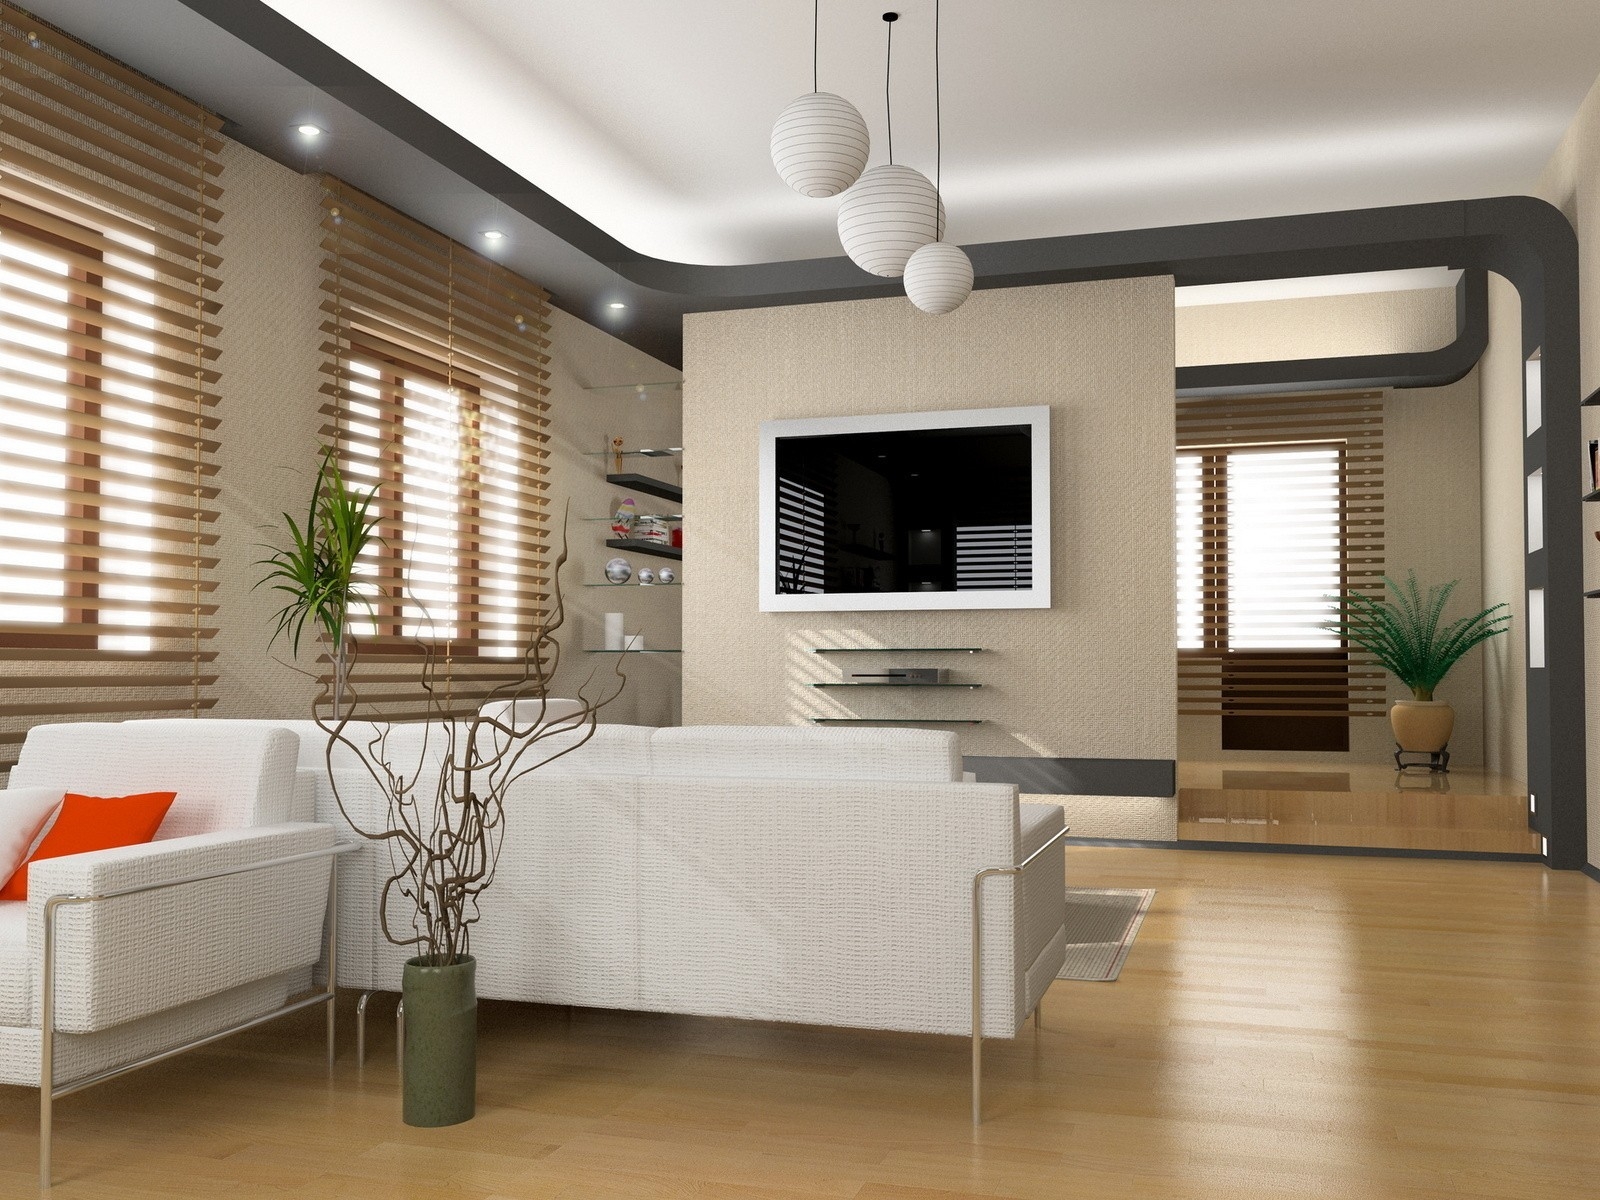 Superb Living Room Design for 1600 x 1200 resolution